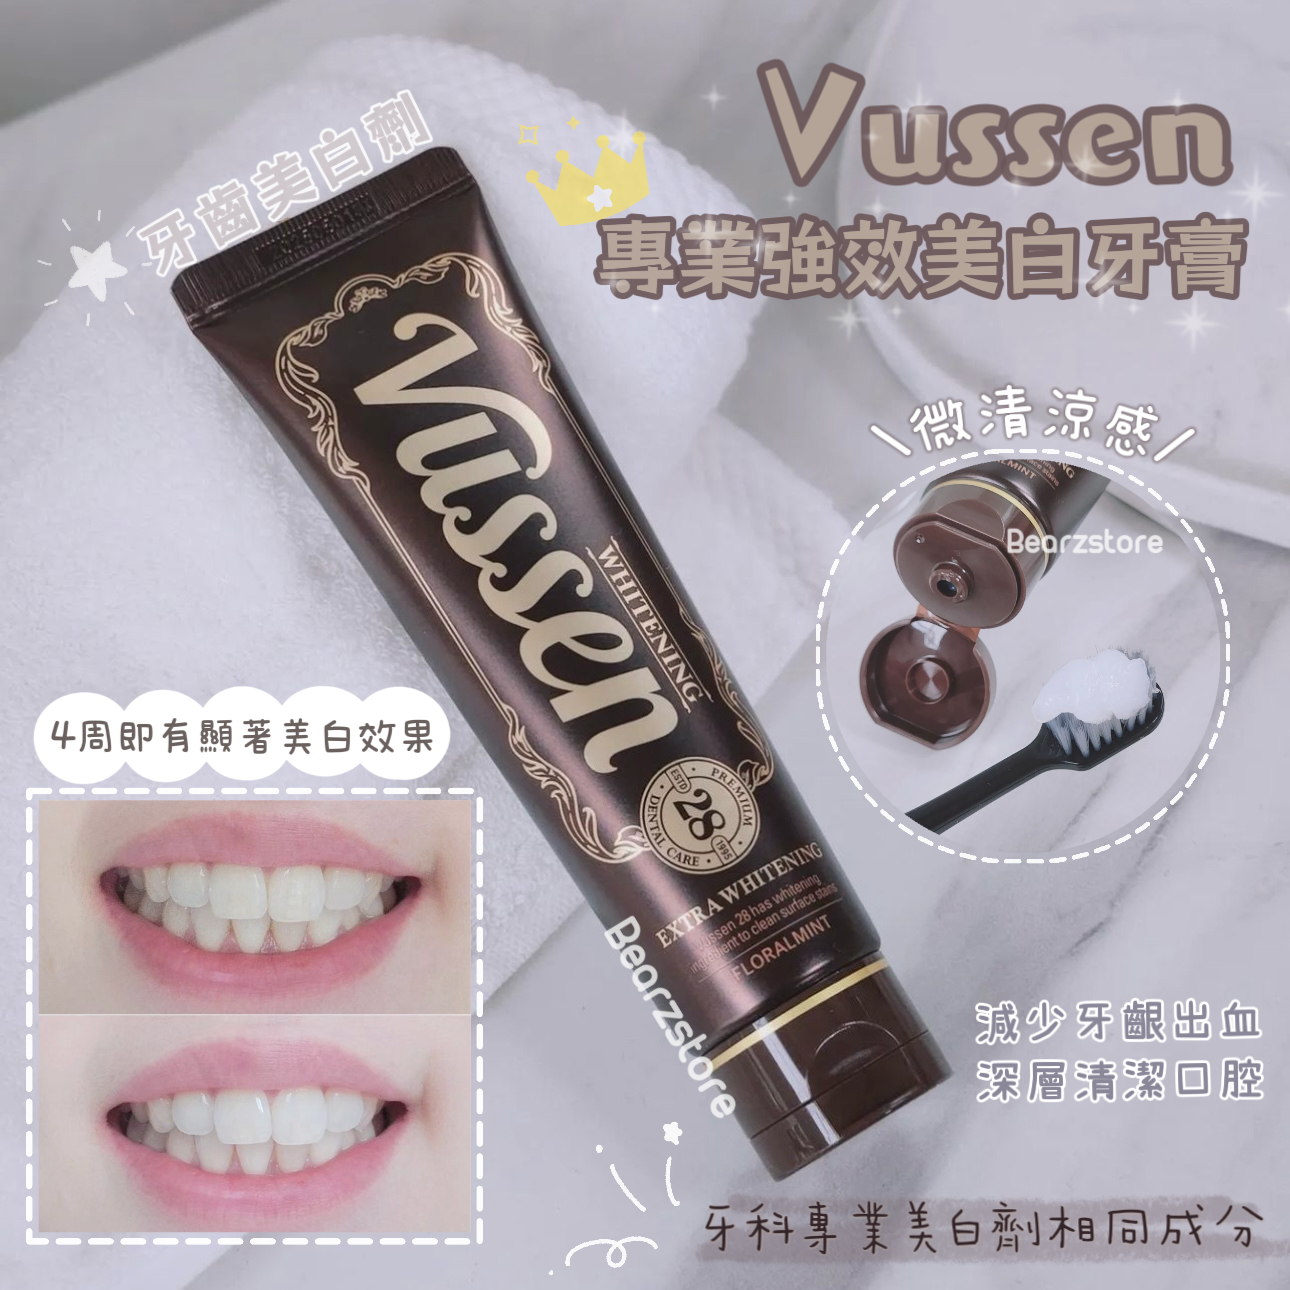 牙齒美白劑 ✨| Vussen 28 專業牙科強效美白牙膏 🦷| Vussen HP28 Extra Whitening Toothpaste🔥